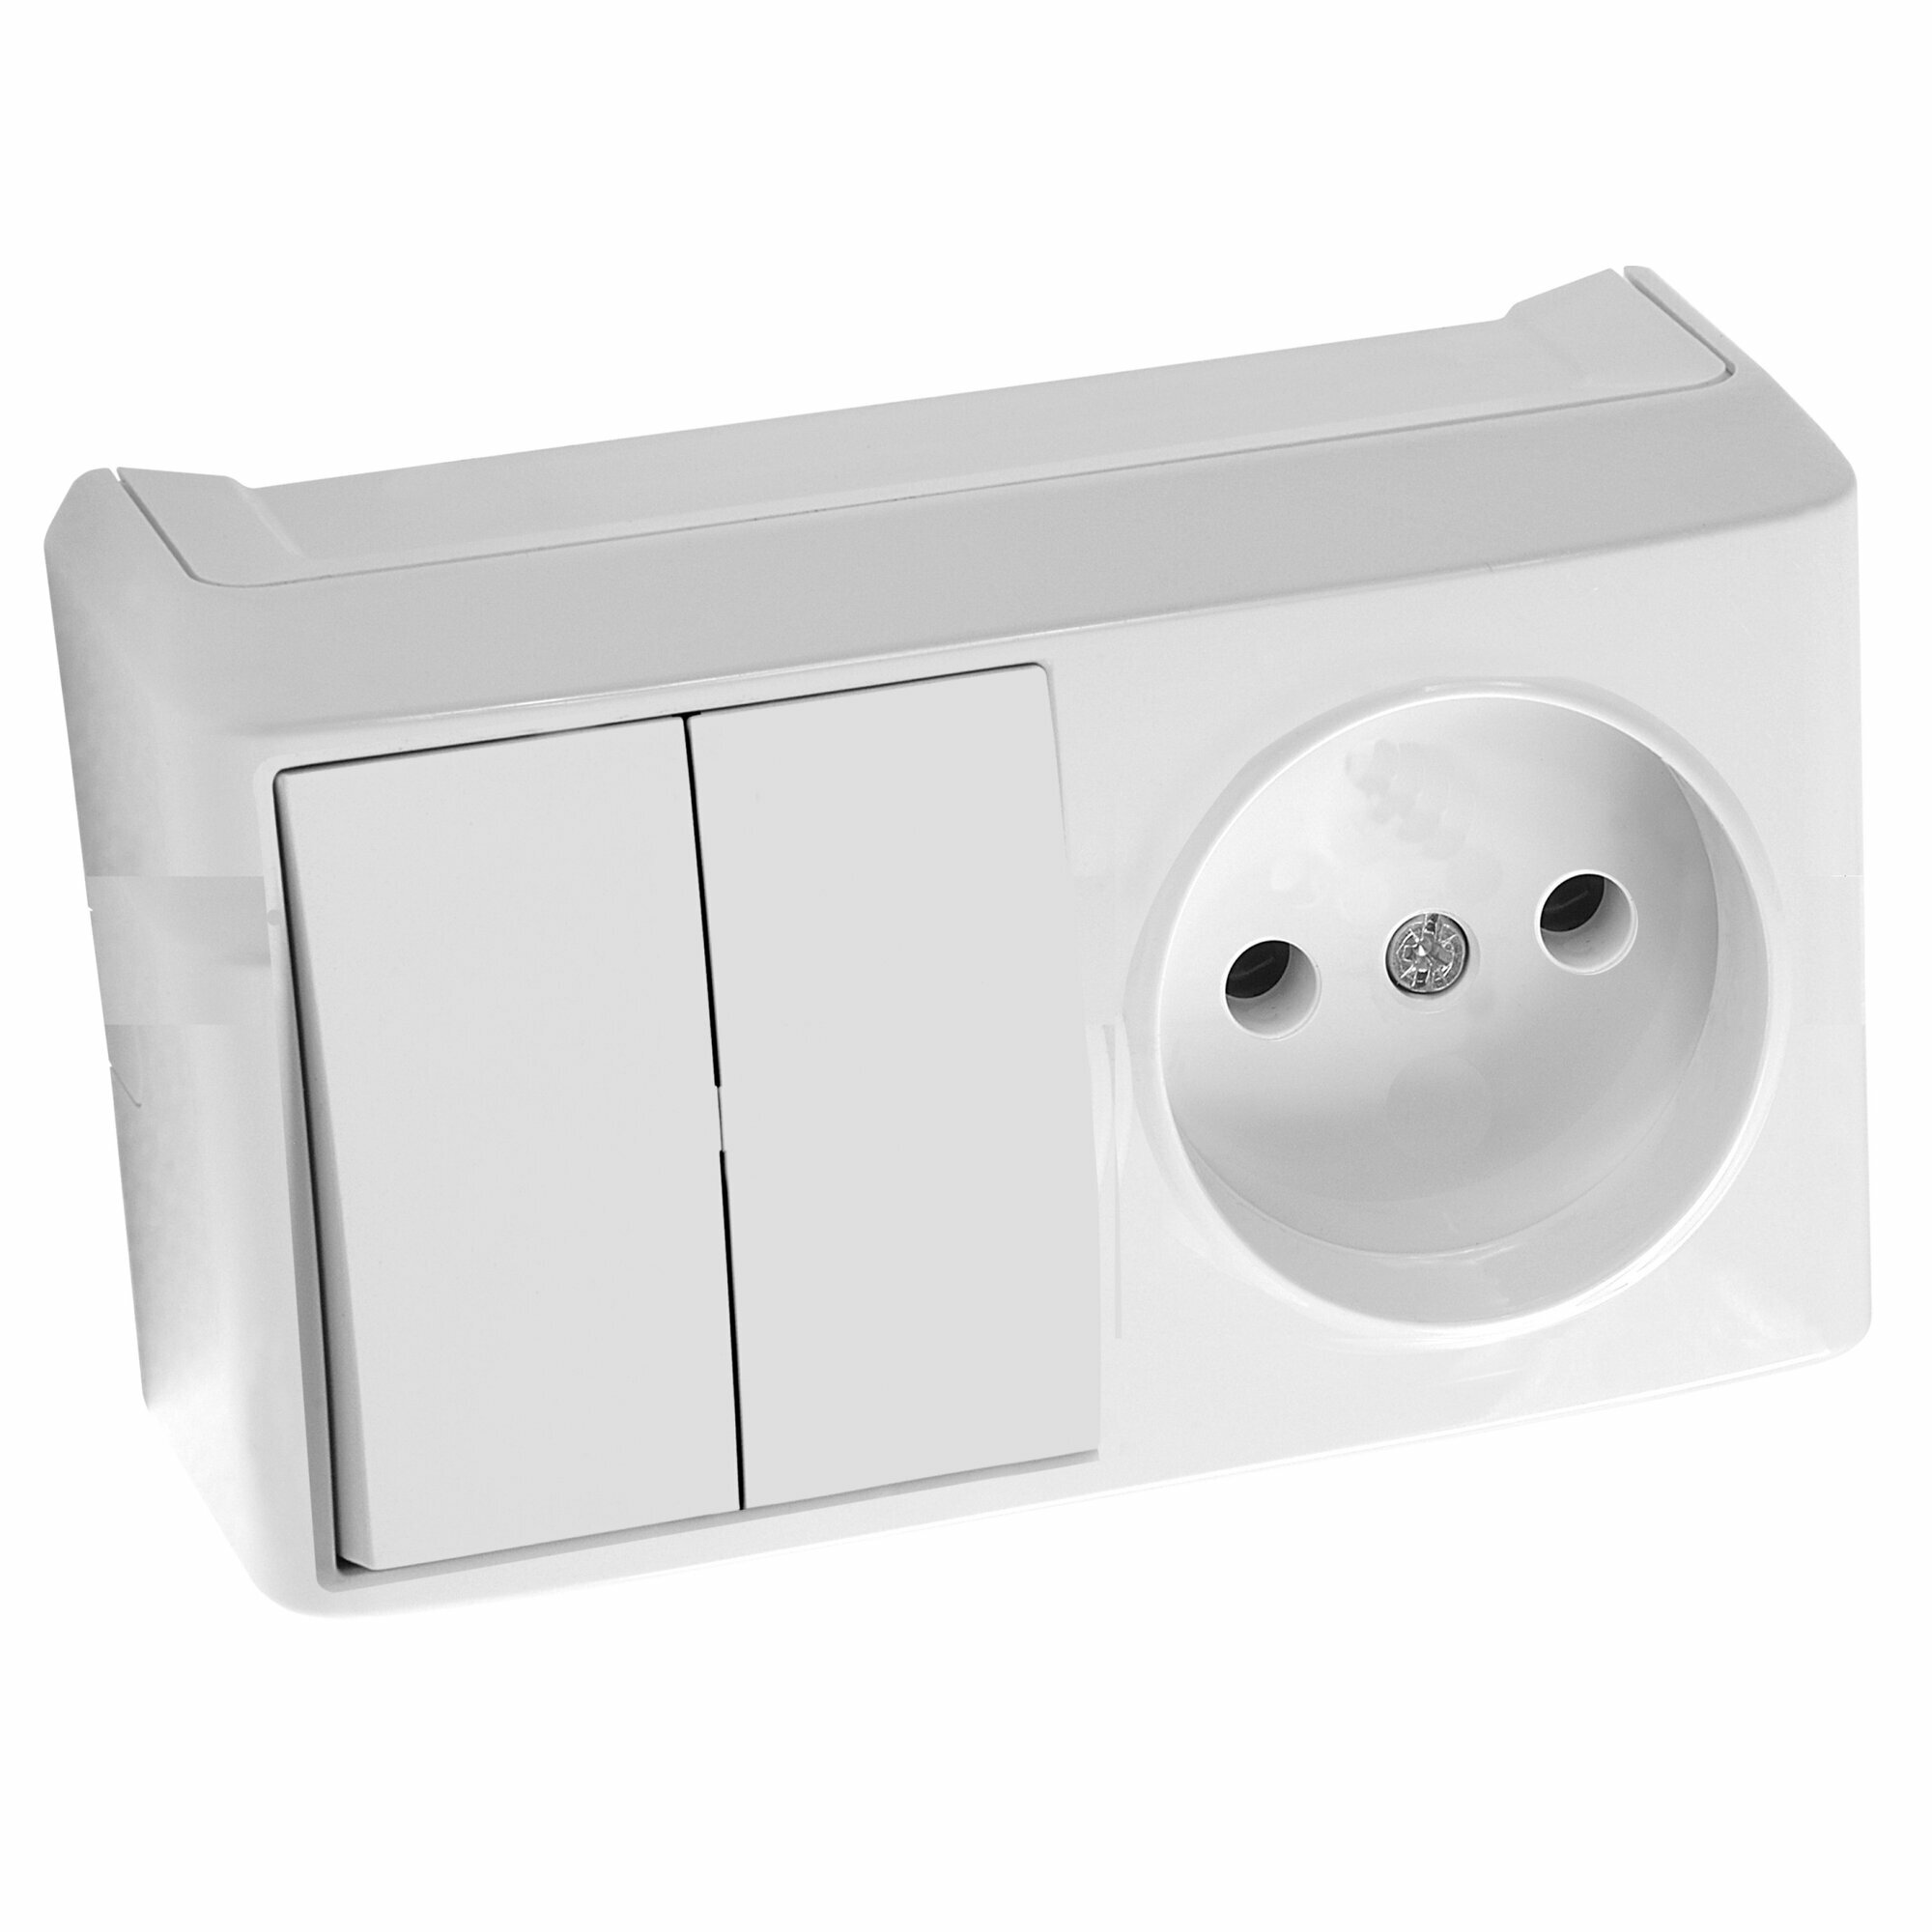 Блок комбинированный Viko двойной выключатель с розеткой белый накладной, 90681189